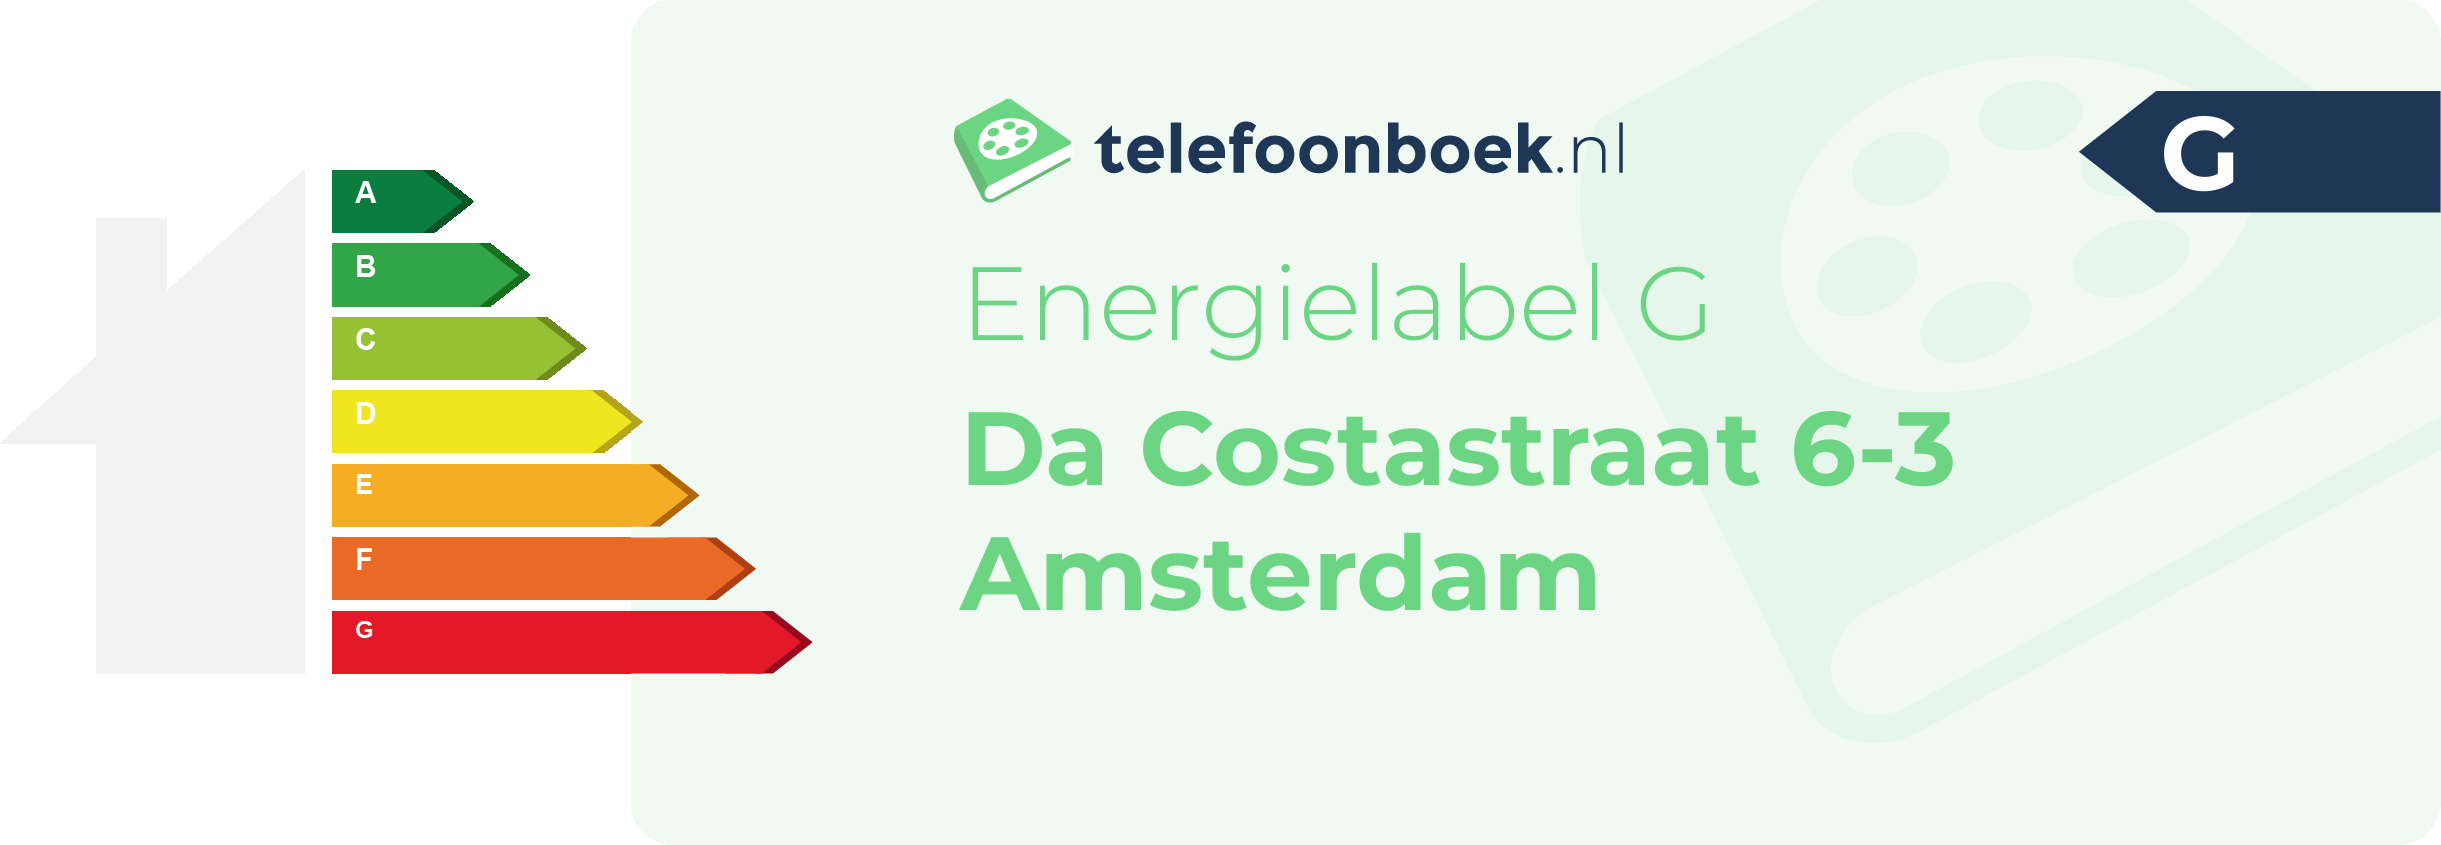 Energielabel Da Costastraat 6-3 Amsterdam